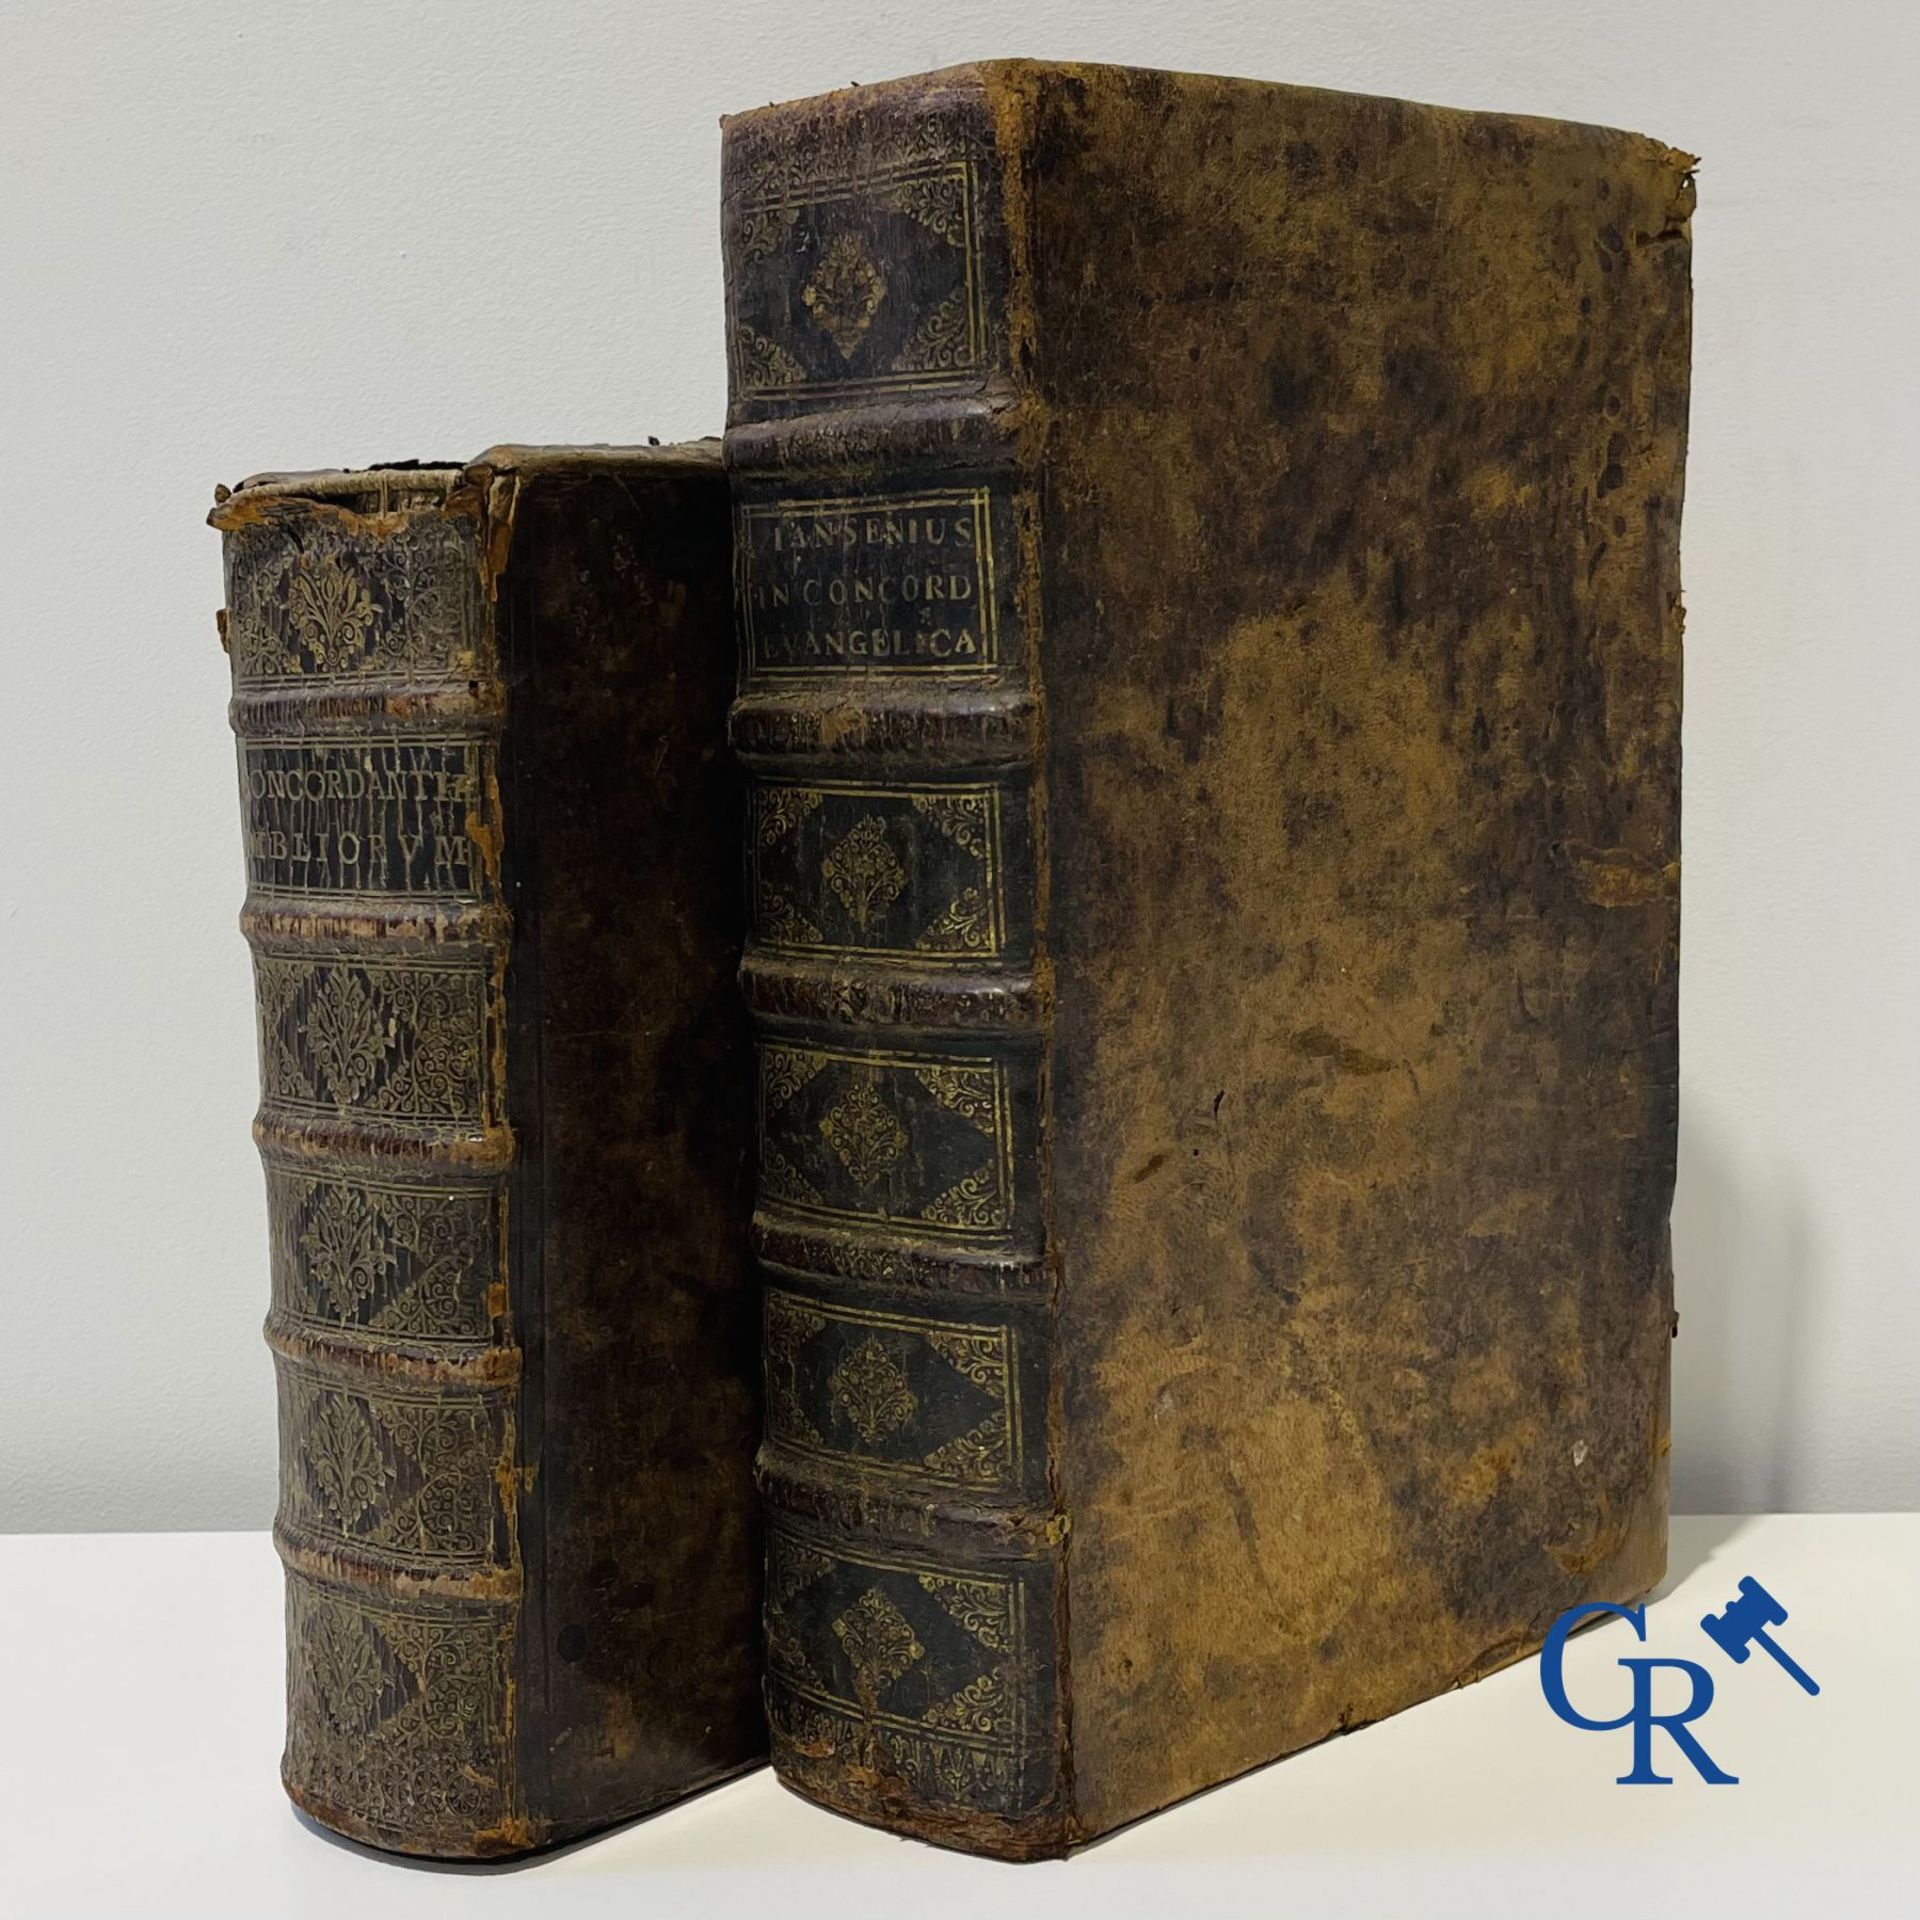 Early printed books: Cornelius Jansenius, Commentariorum, Petrus Zangrius Tiletanus 1572 and Concord